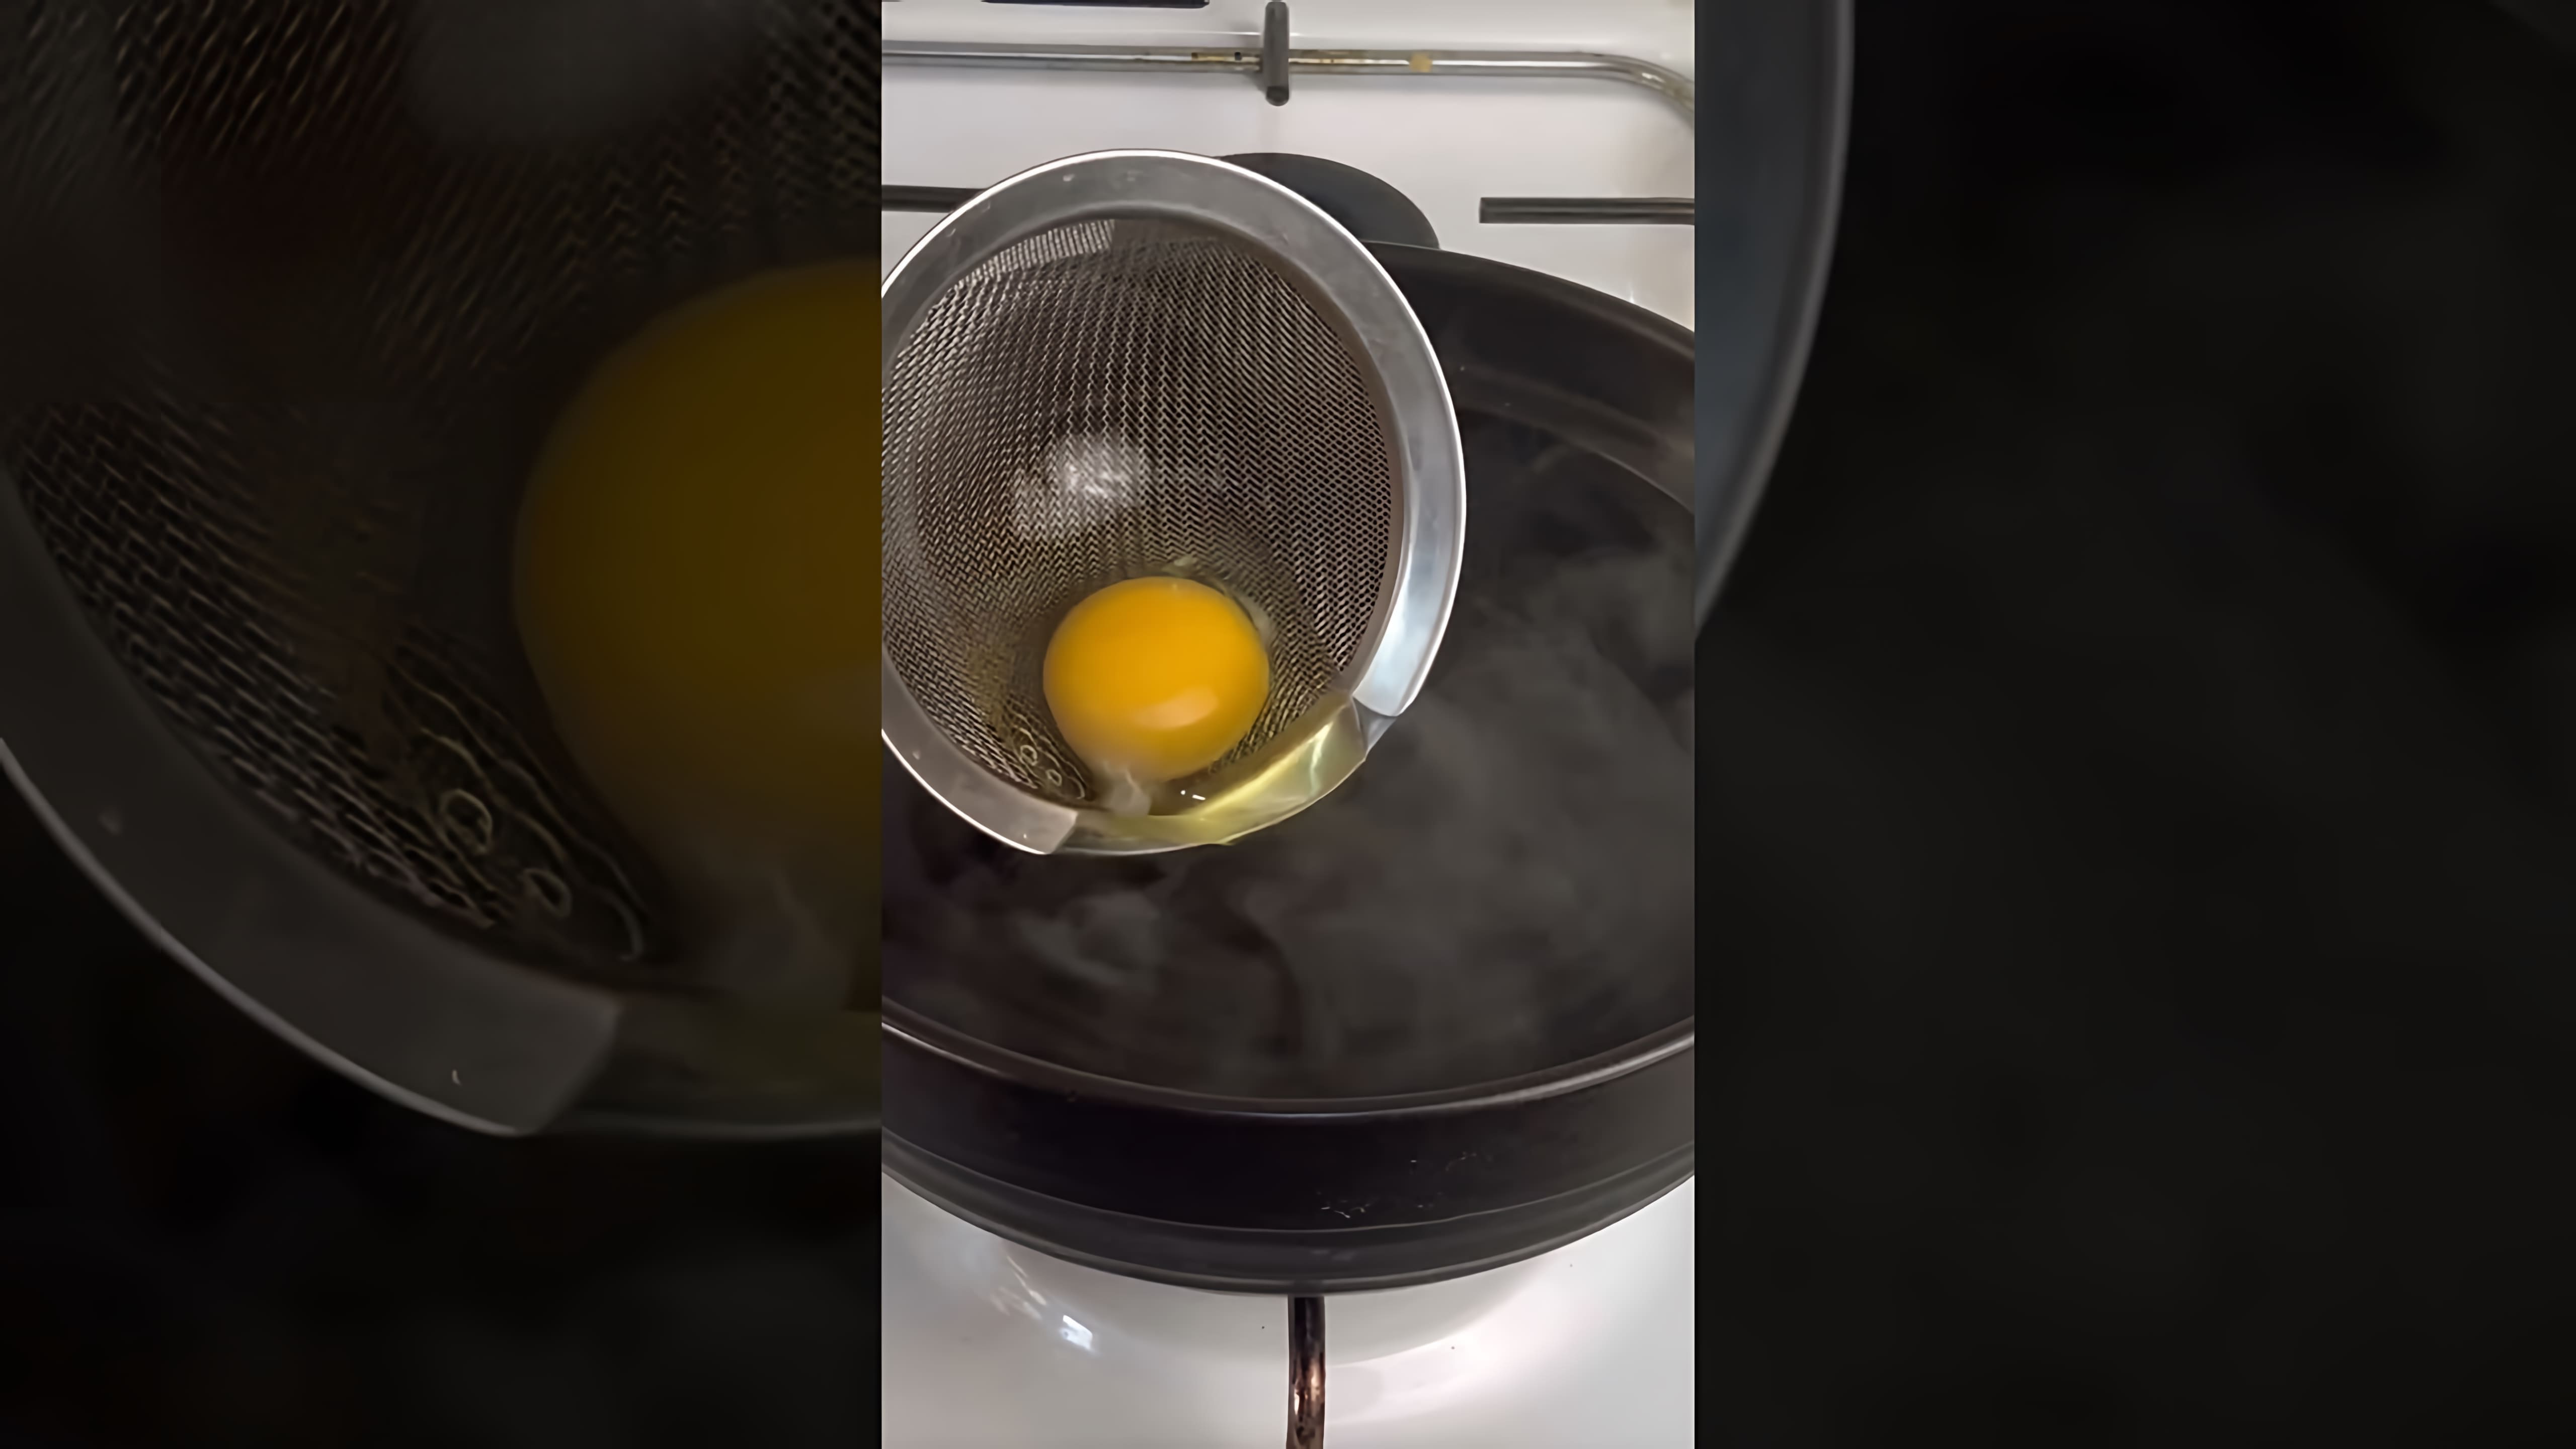 В этом видео демонстрируется простой и быстрый способ приготовления идеального яйца пашот без использования воронок, уксуса и полиэтиленовых пакетиков